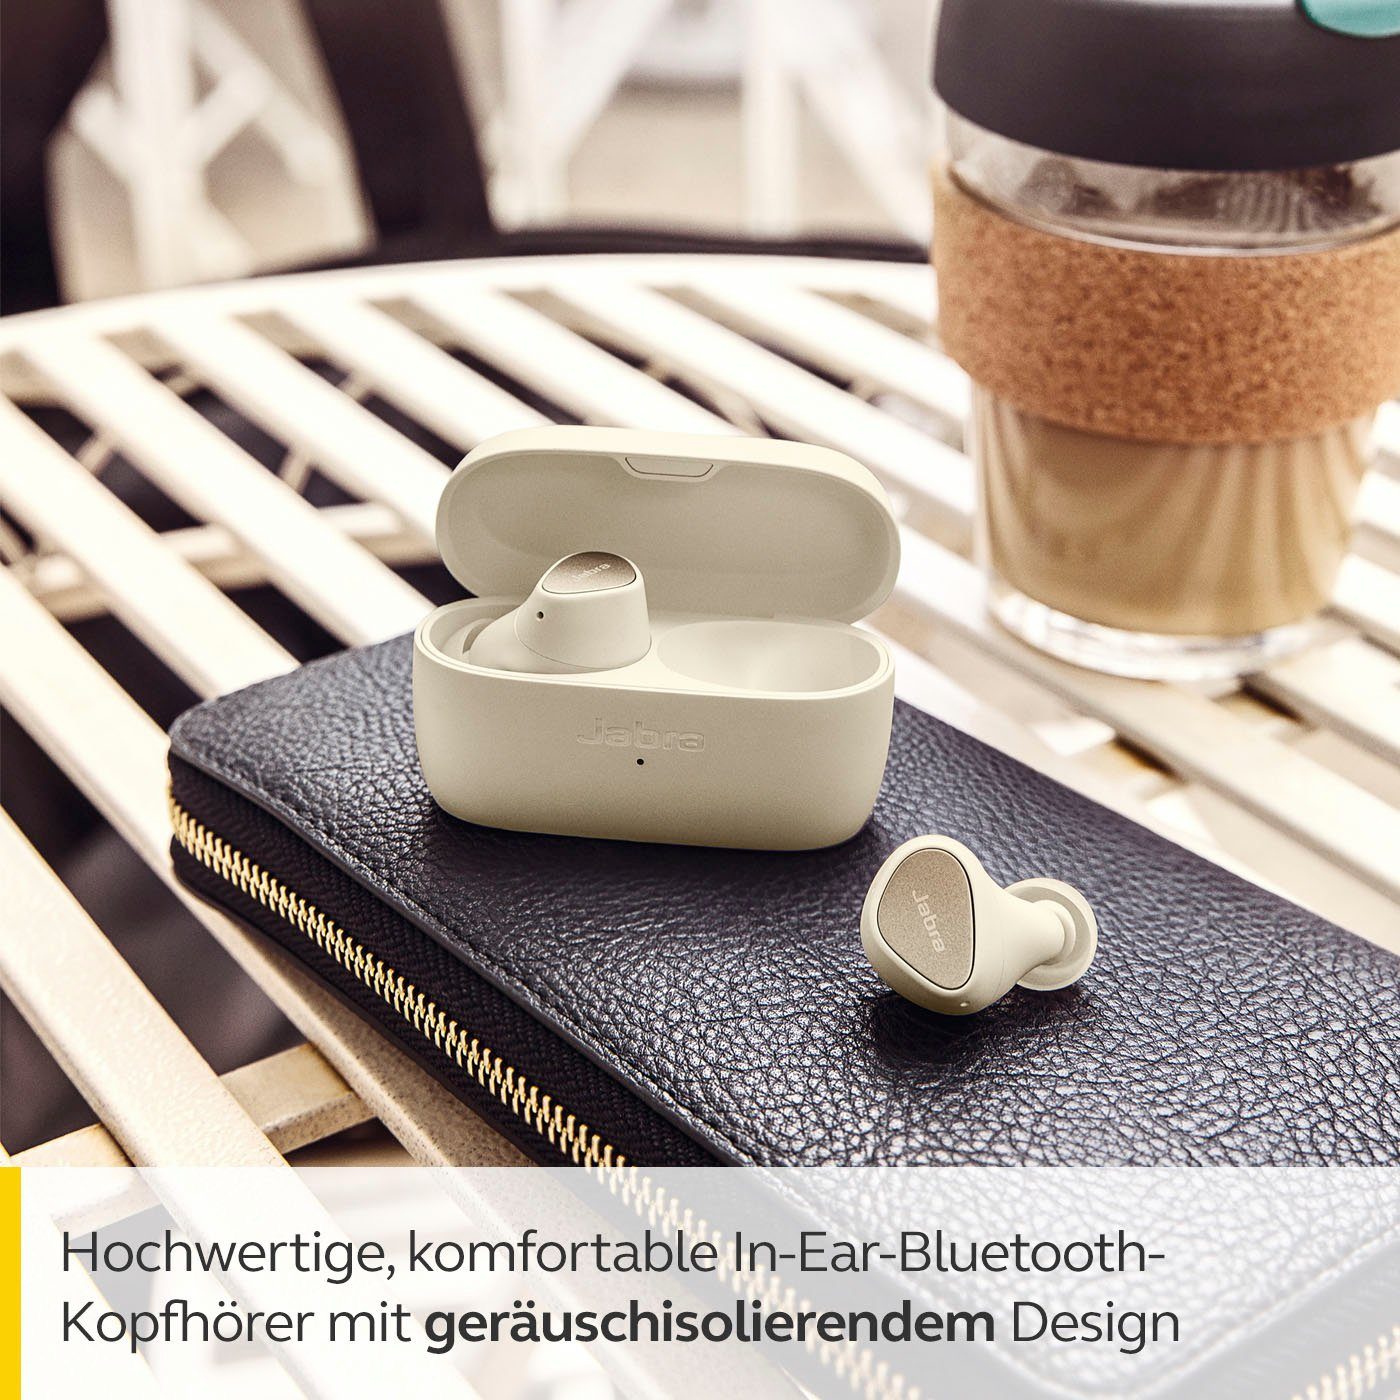 Google 3 gold-beige Alexa, Assistant, Siri, Elite Jabra Bluetooth) (Geräuschisolierung, In-Ear-Kopfhörer